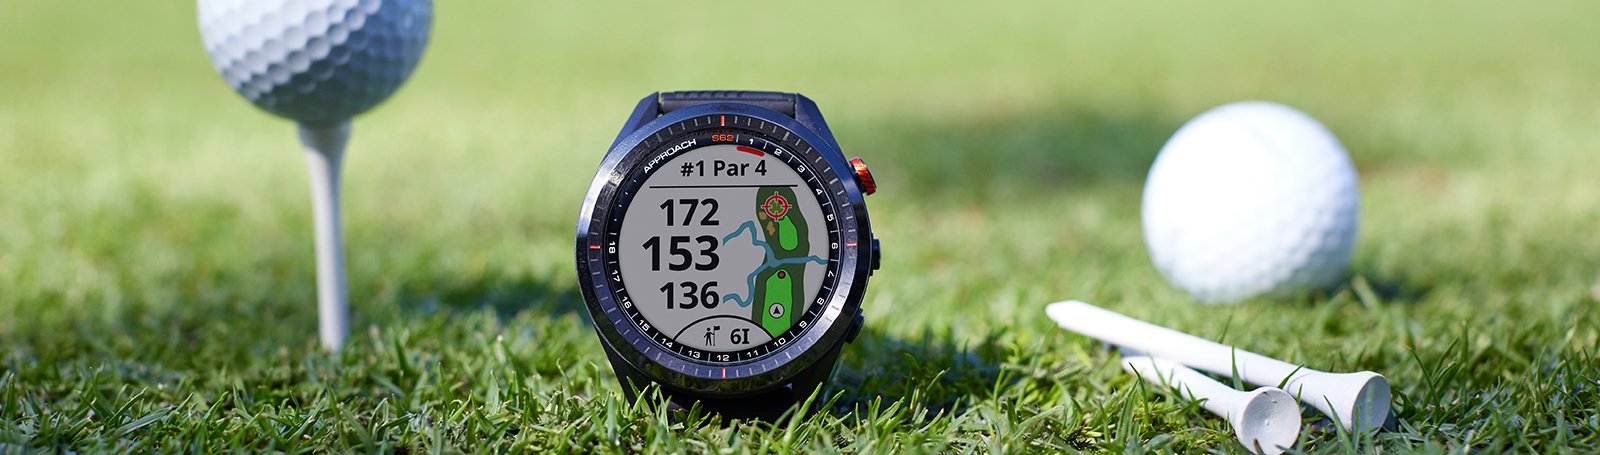 Garmin Approach S6 Golf GPS Watch Reviews - Ubergolf